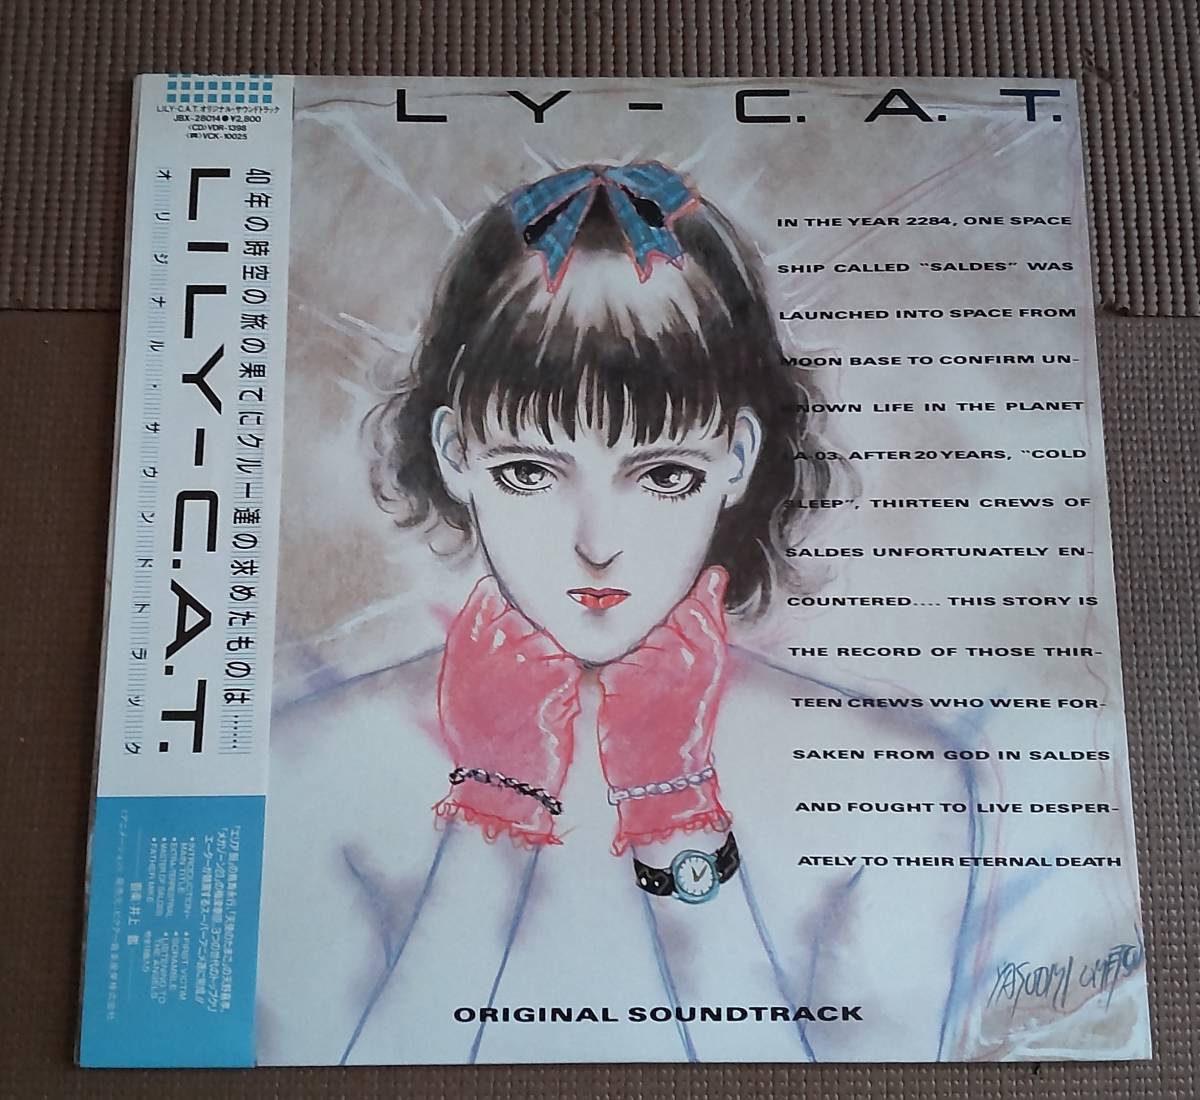 LILY-C.A.T. 井上鑑サウンドトラック LP アナログ盤の画像1